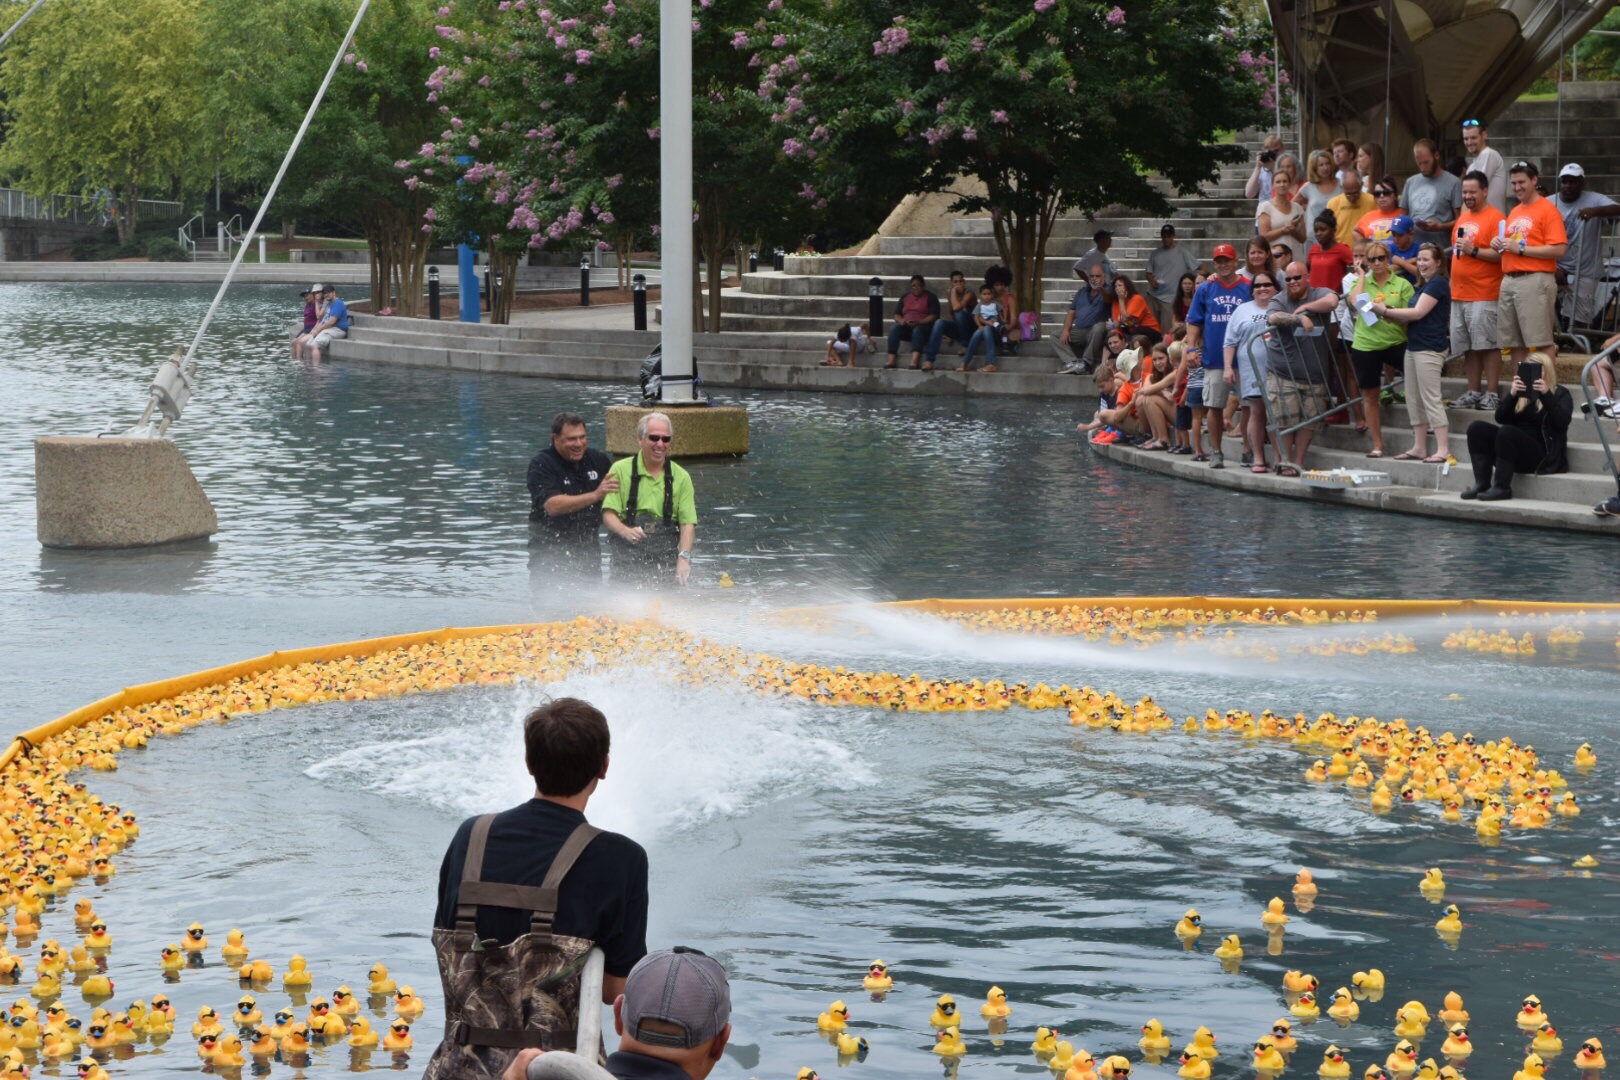 30K+ ducks fill pond in 2015 Boys & Girls Club duck race ...